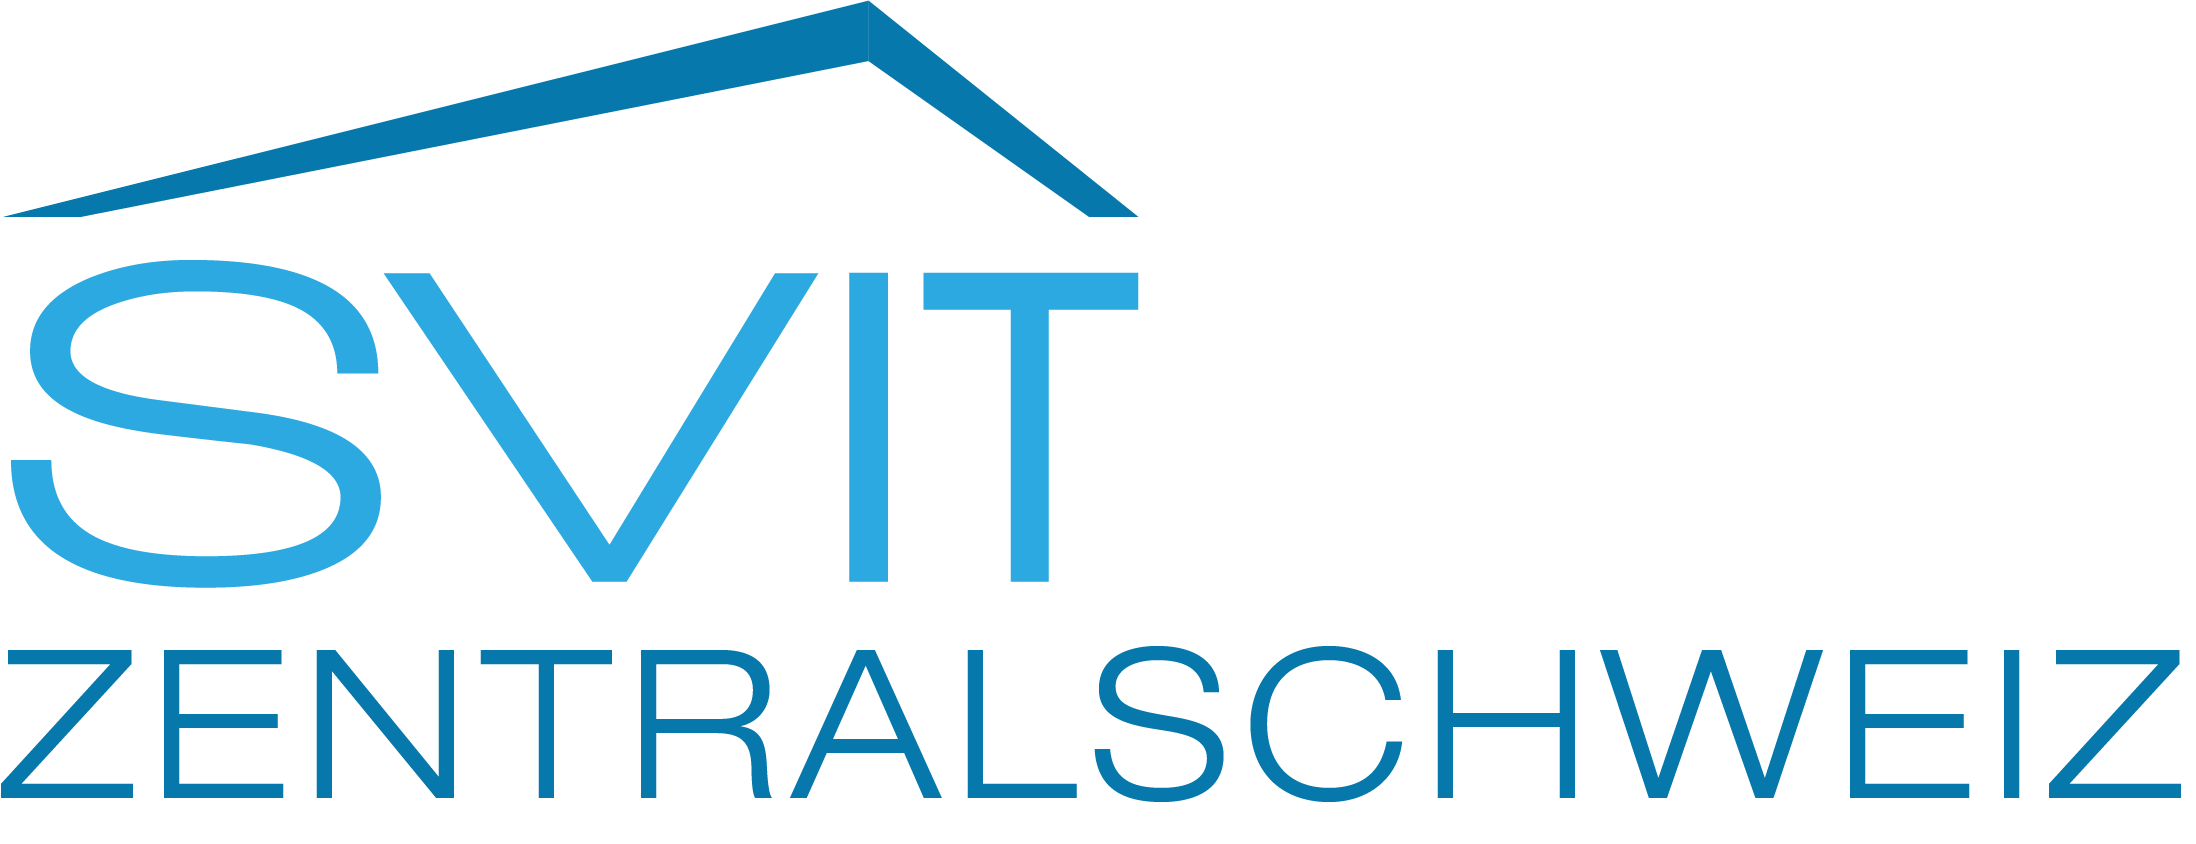 SVIT Logo Zentralschweiz farbig